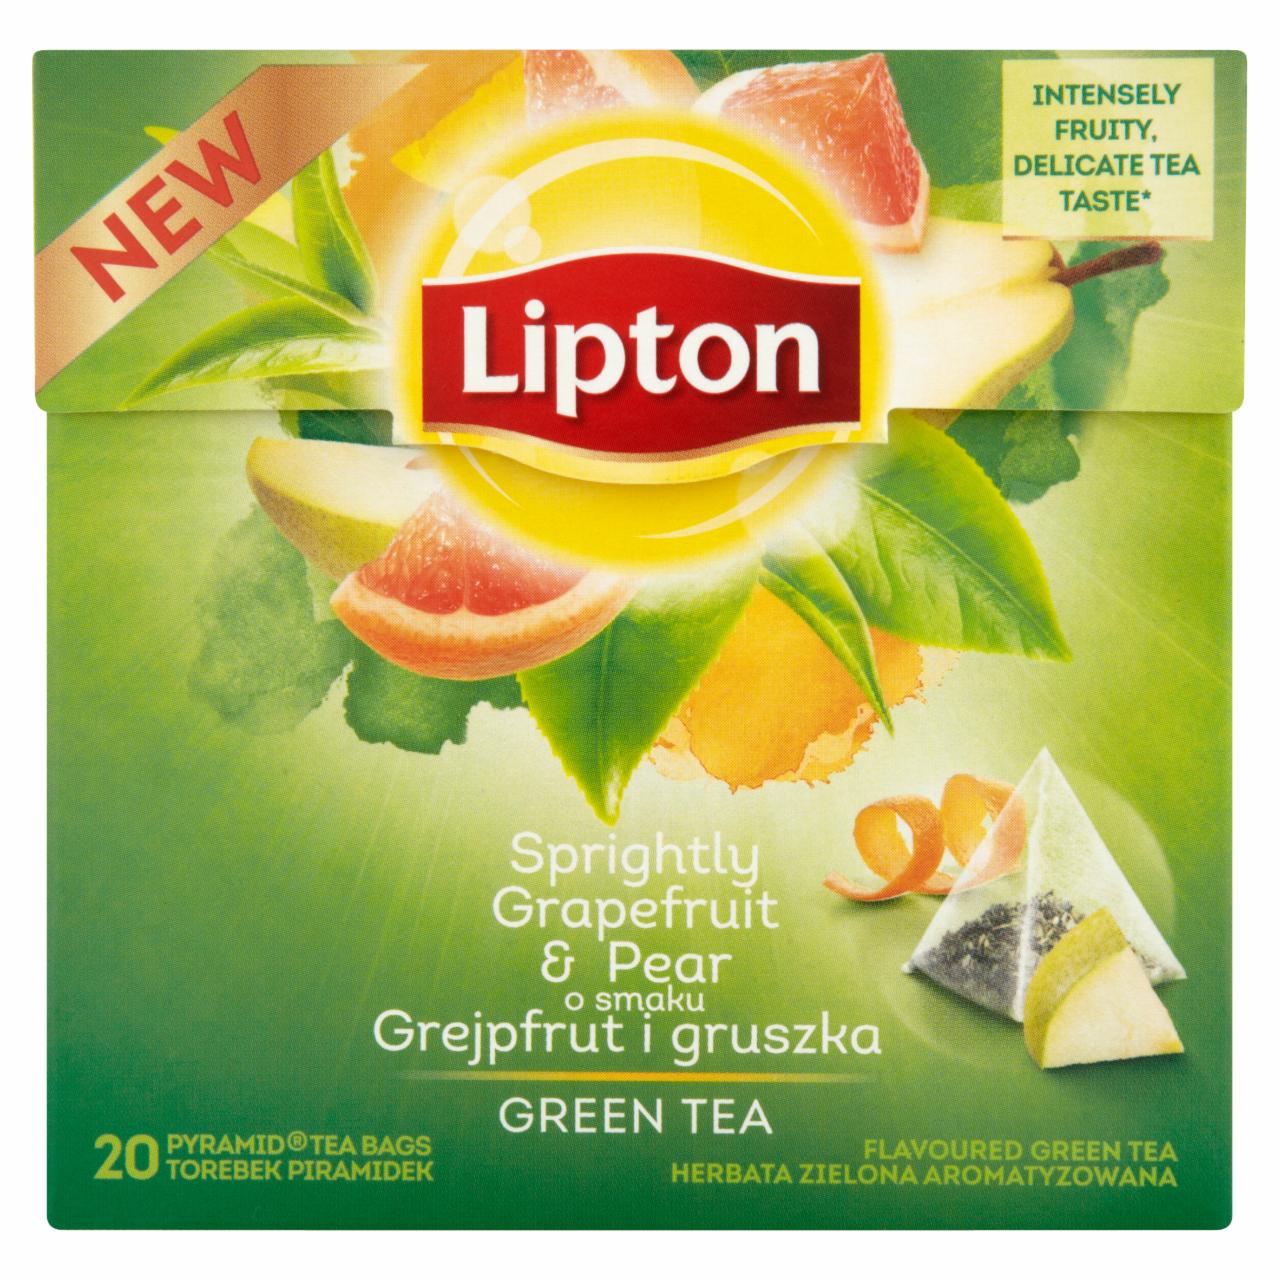 Zdjęcia - Lipton o smaku Grejpfrut i gruszka Herbata zielona aromatyzowana 30 g (20 torebek)